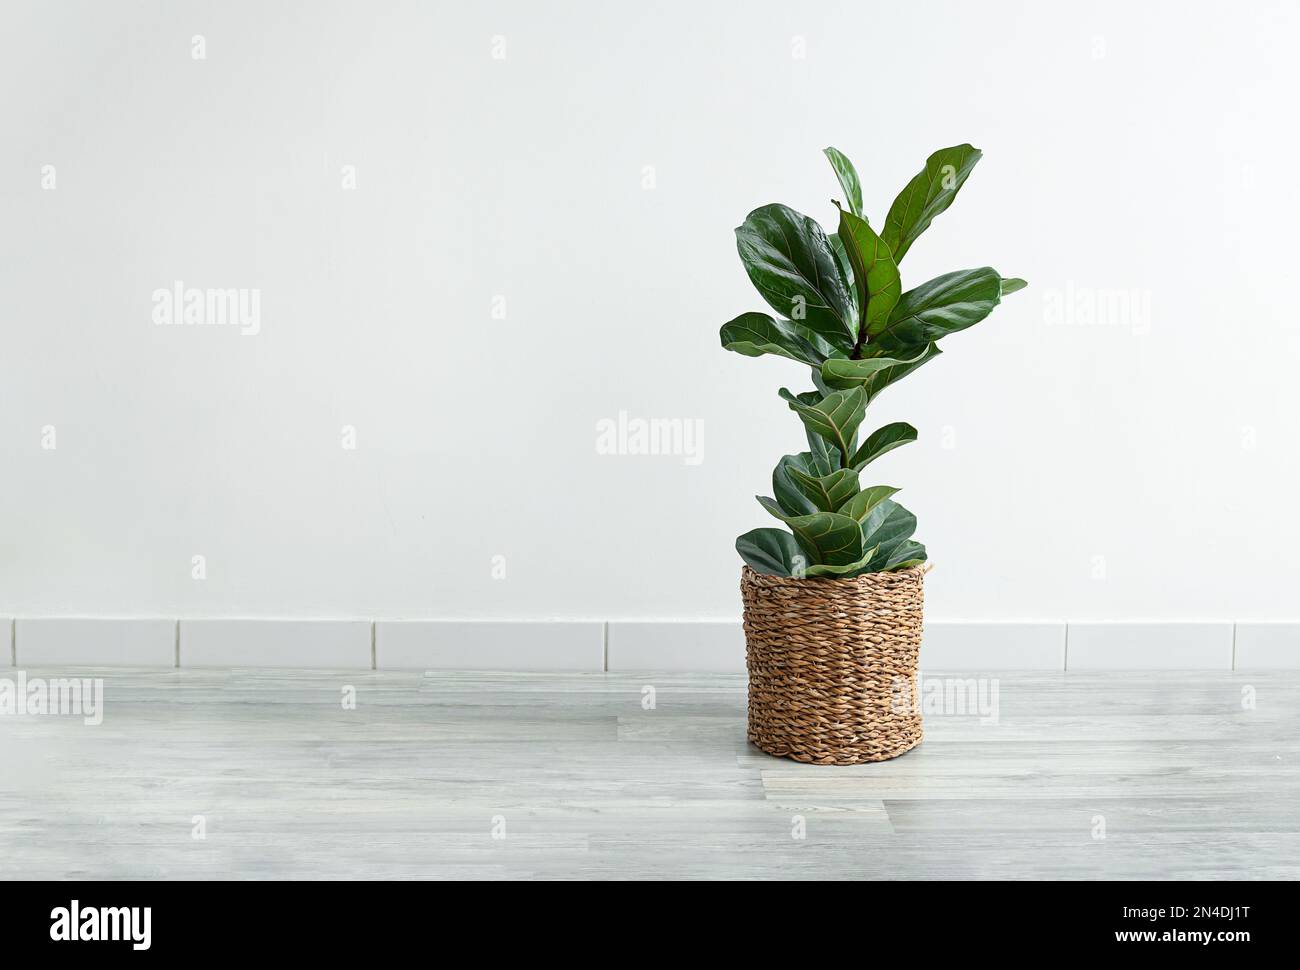 Planta casera Ficus Lyrata o higo violín en una maceta de mimbre en la habitación sobre el fondo claro, interior moderno minimalista con espacio de copia Foto de stock